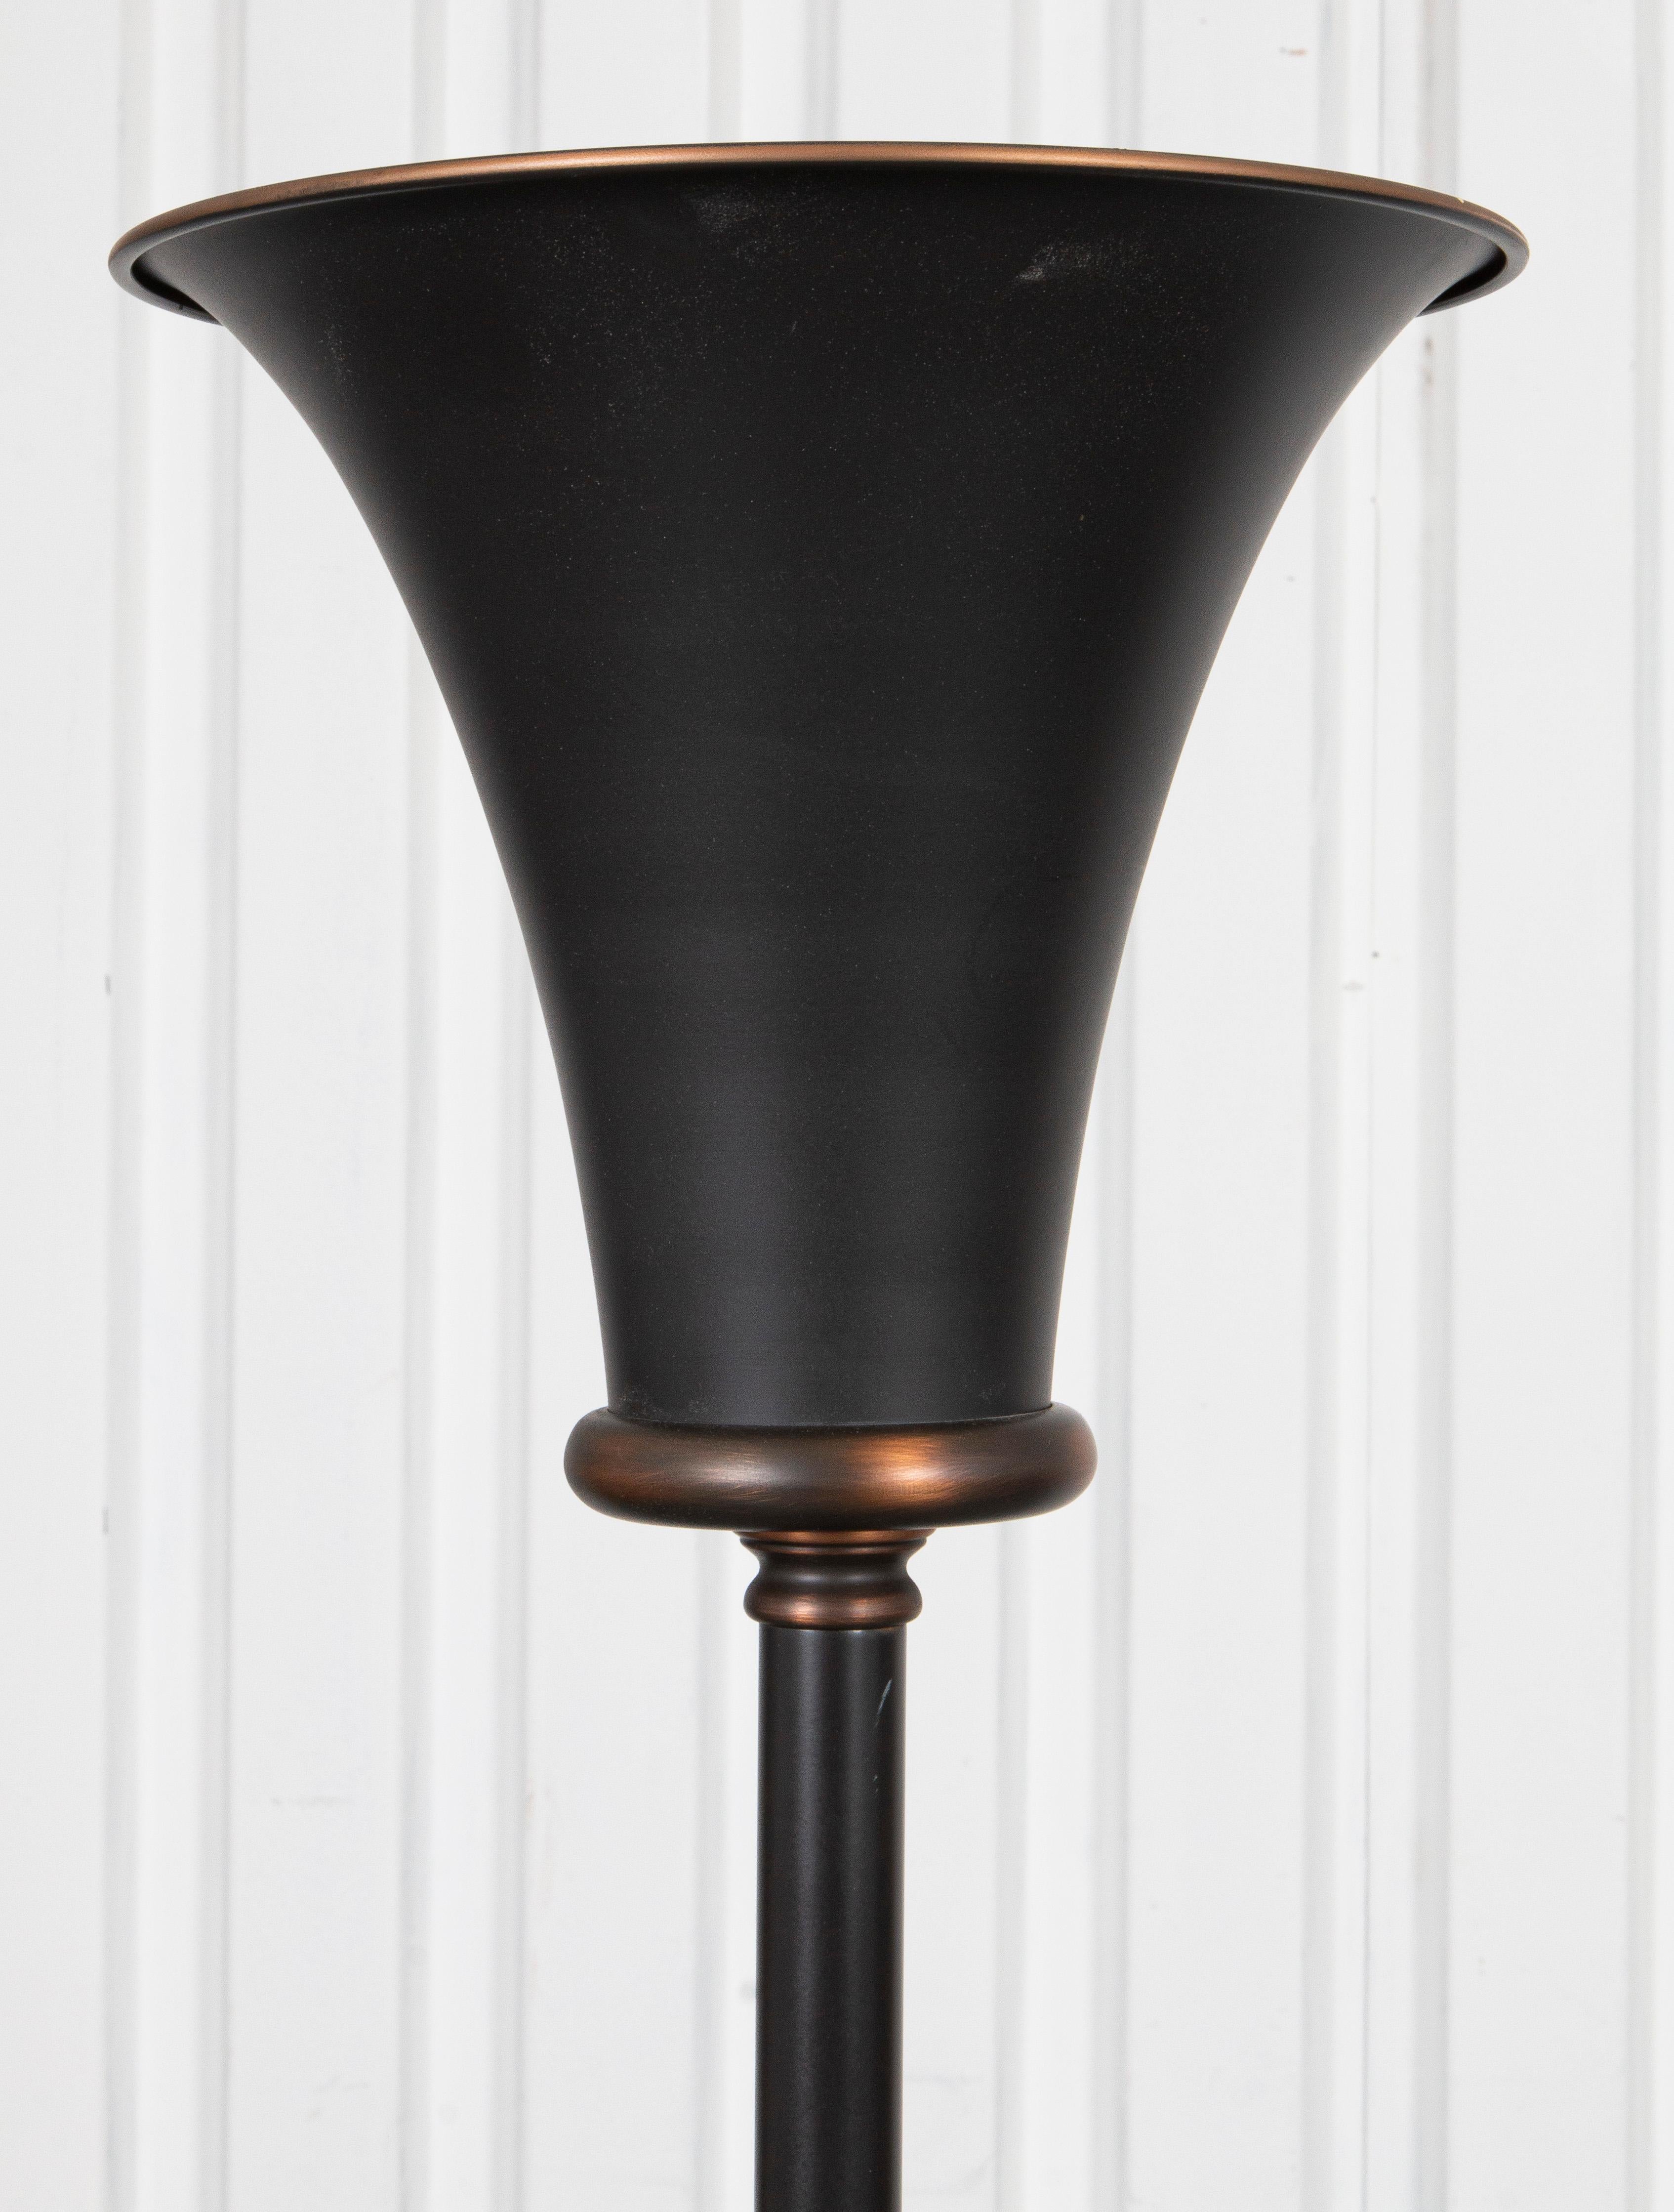 Modern bronze-tone metal torchiere floor lamp.